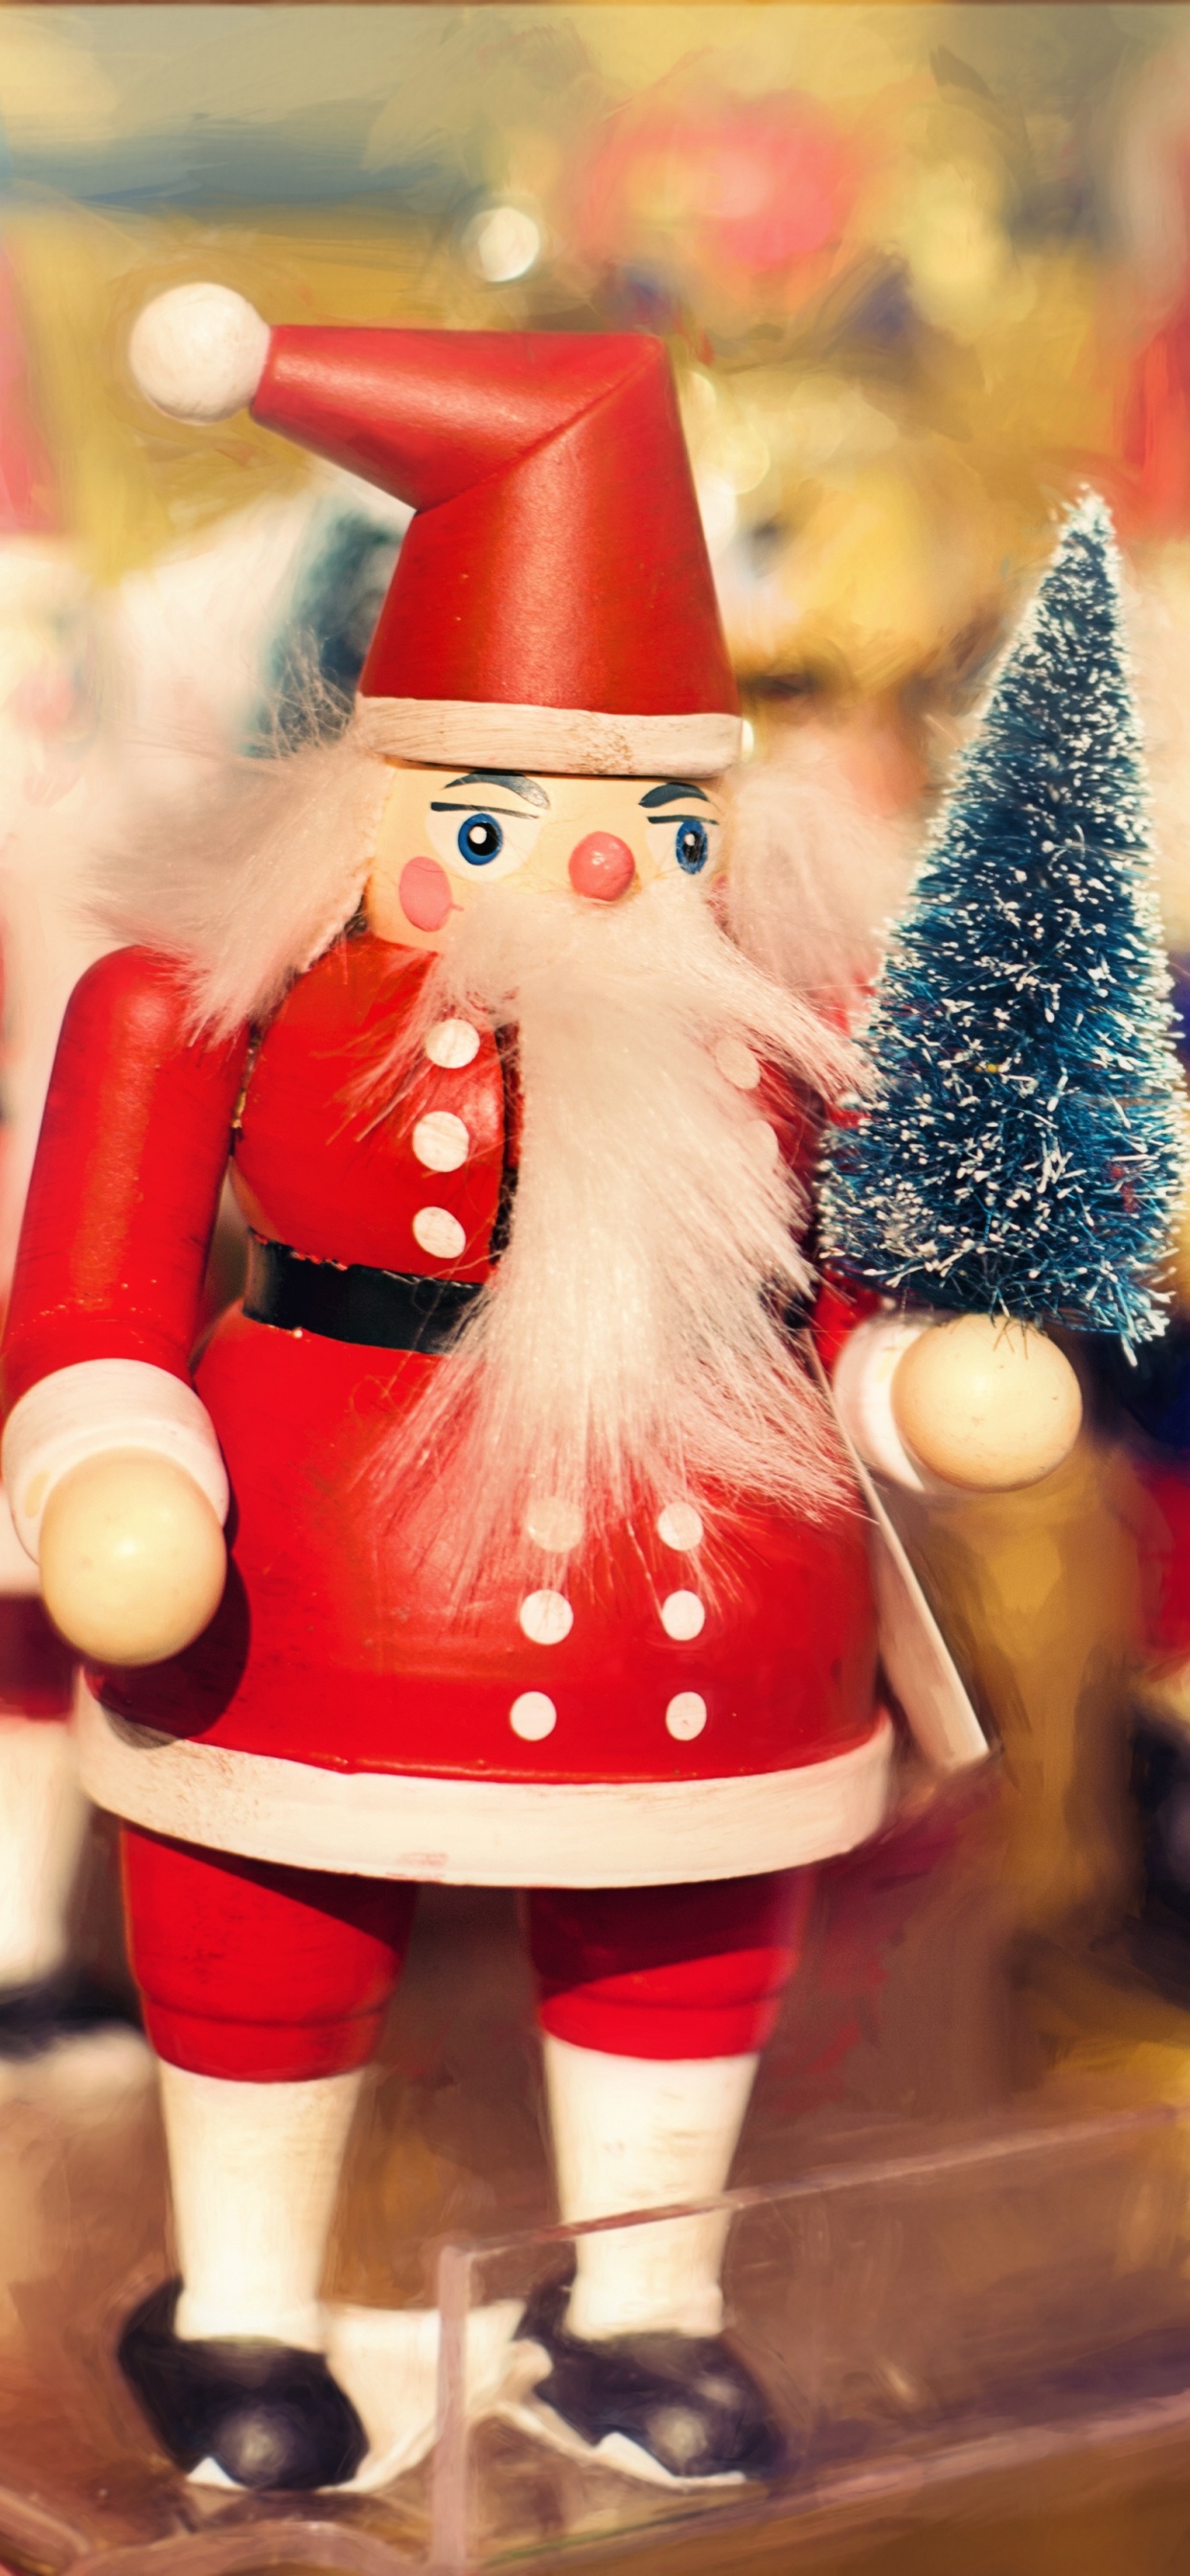 Weihnachten, Weihnachtsmann, Nussknacker, Spielzeug, Christmas Ornament. Wallpaper in 1242x2688 Resolution